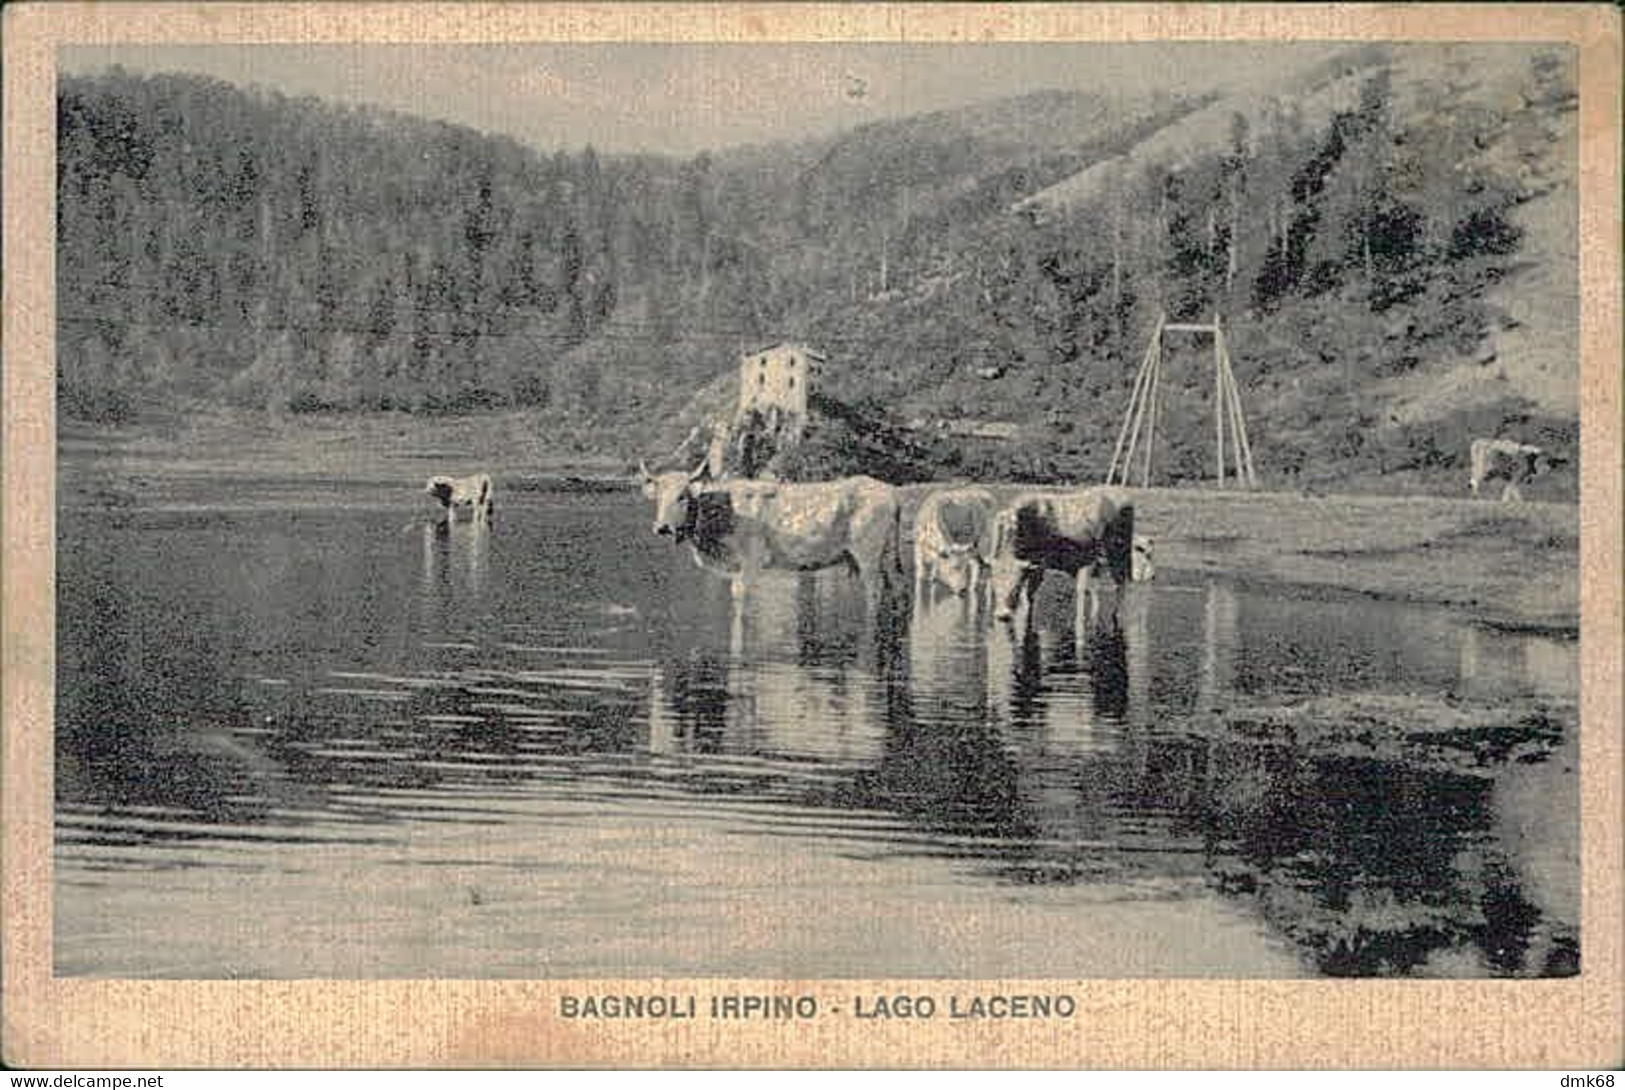 BAGNOLI IRPINO ( AVELLINO ) LAGO LACENO - EDIZIONE DI CAPUA - FORMATO PICCOLO - SPEDITA 1955 (12681) - Avellino